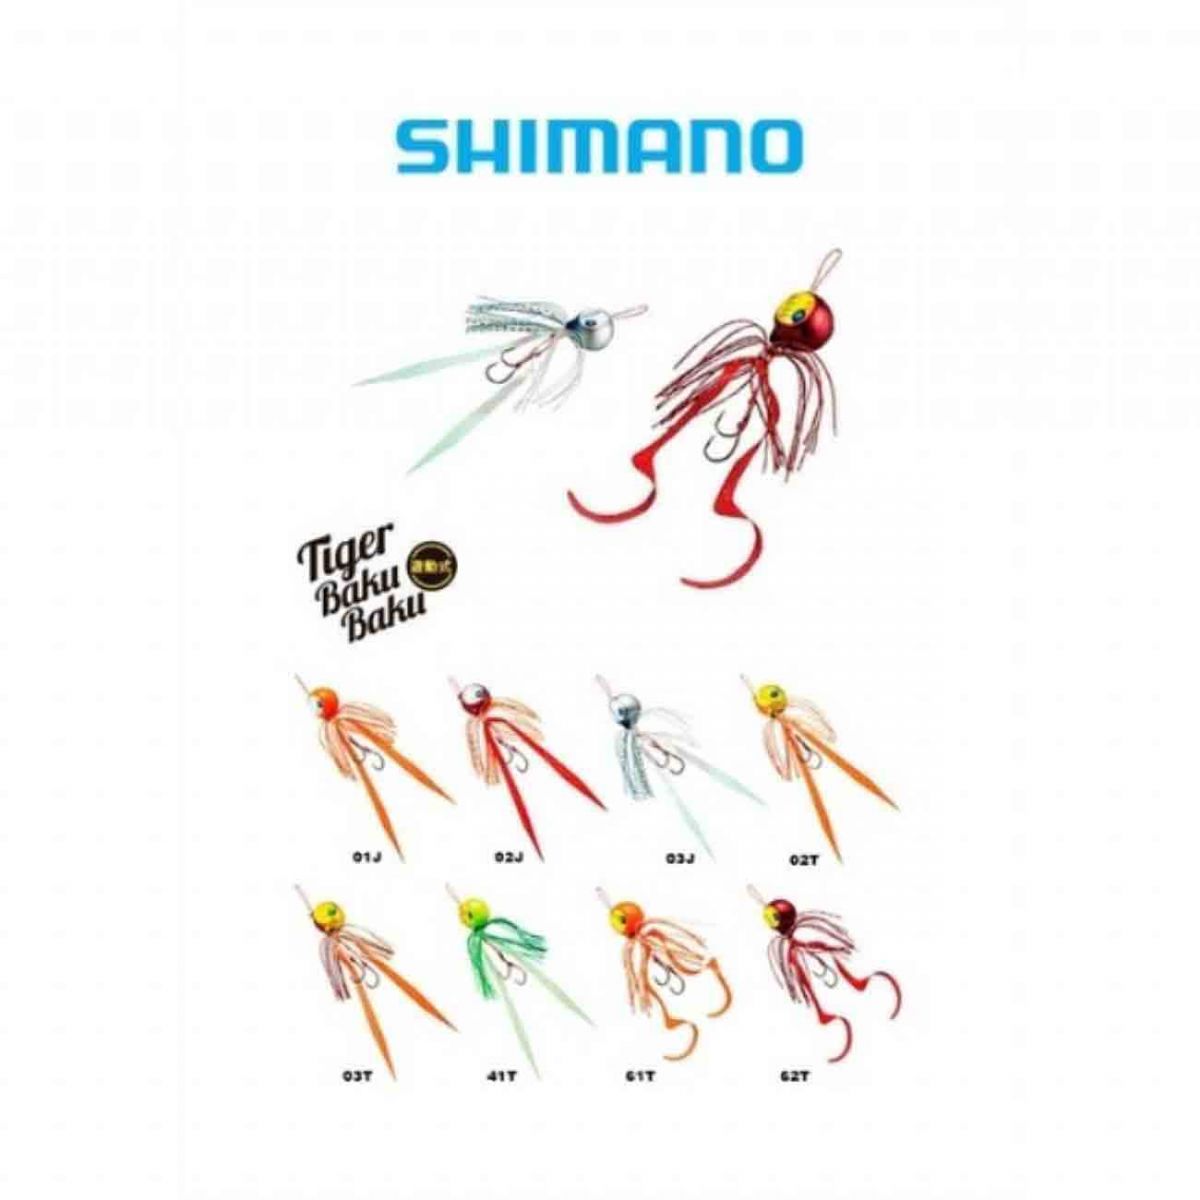 Shimano Tiger Bakü 120 Gram Slider Jig Yem,shimano kalitesinde tai rubber tekniğinde ve slow jigging tekniğinde derin su avlarında kullanabileceğiniz yem serisi